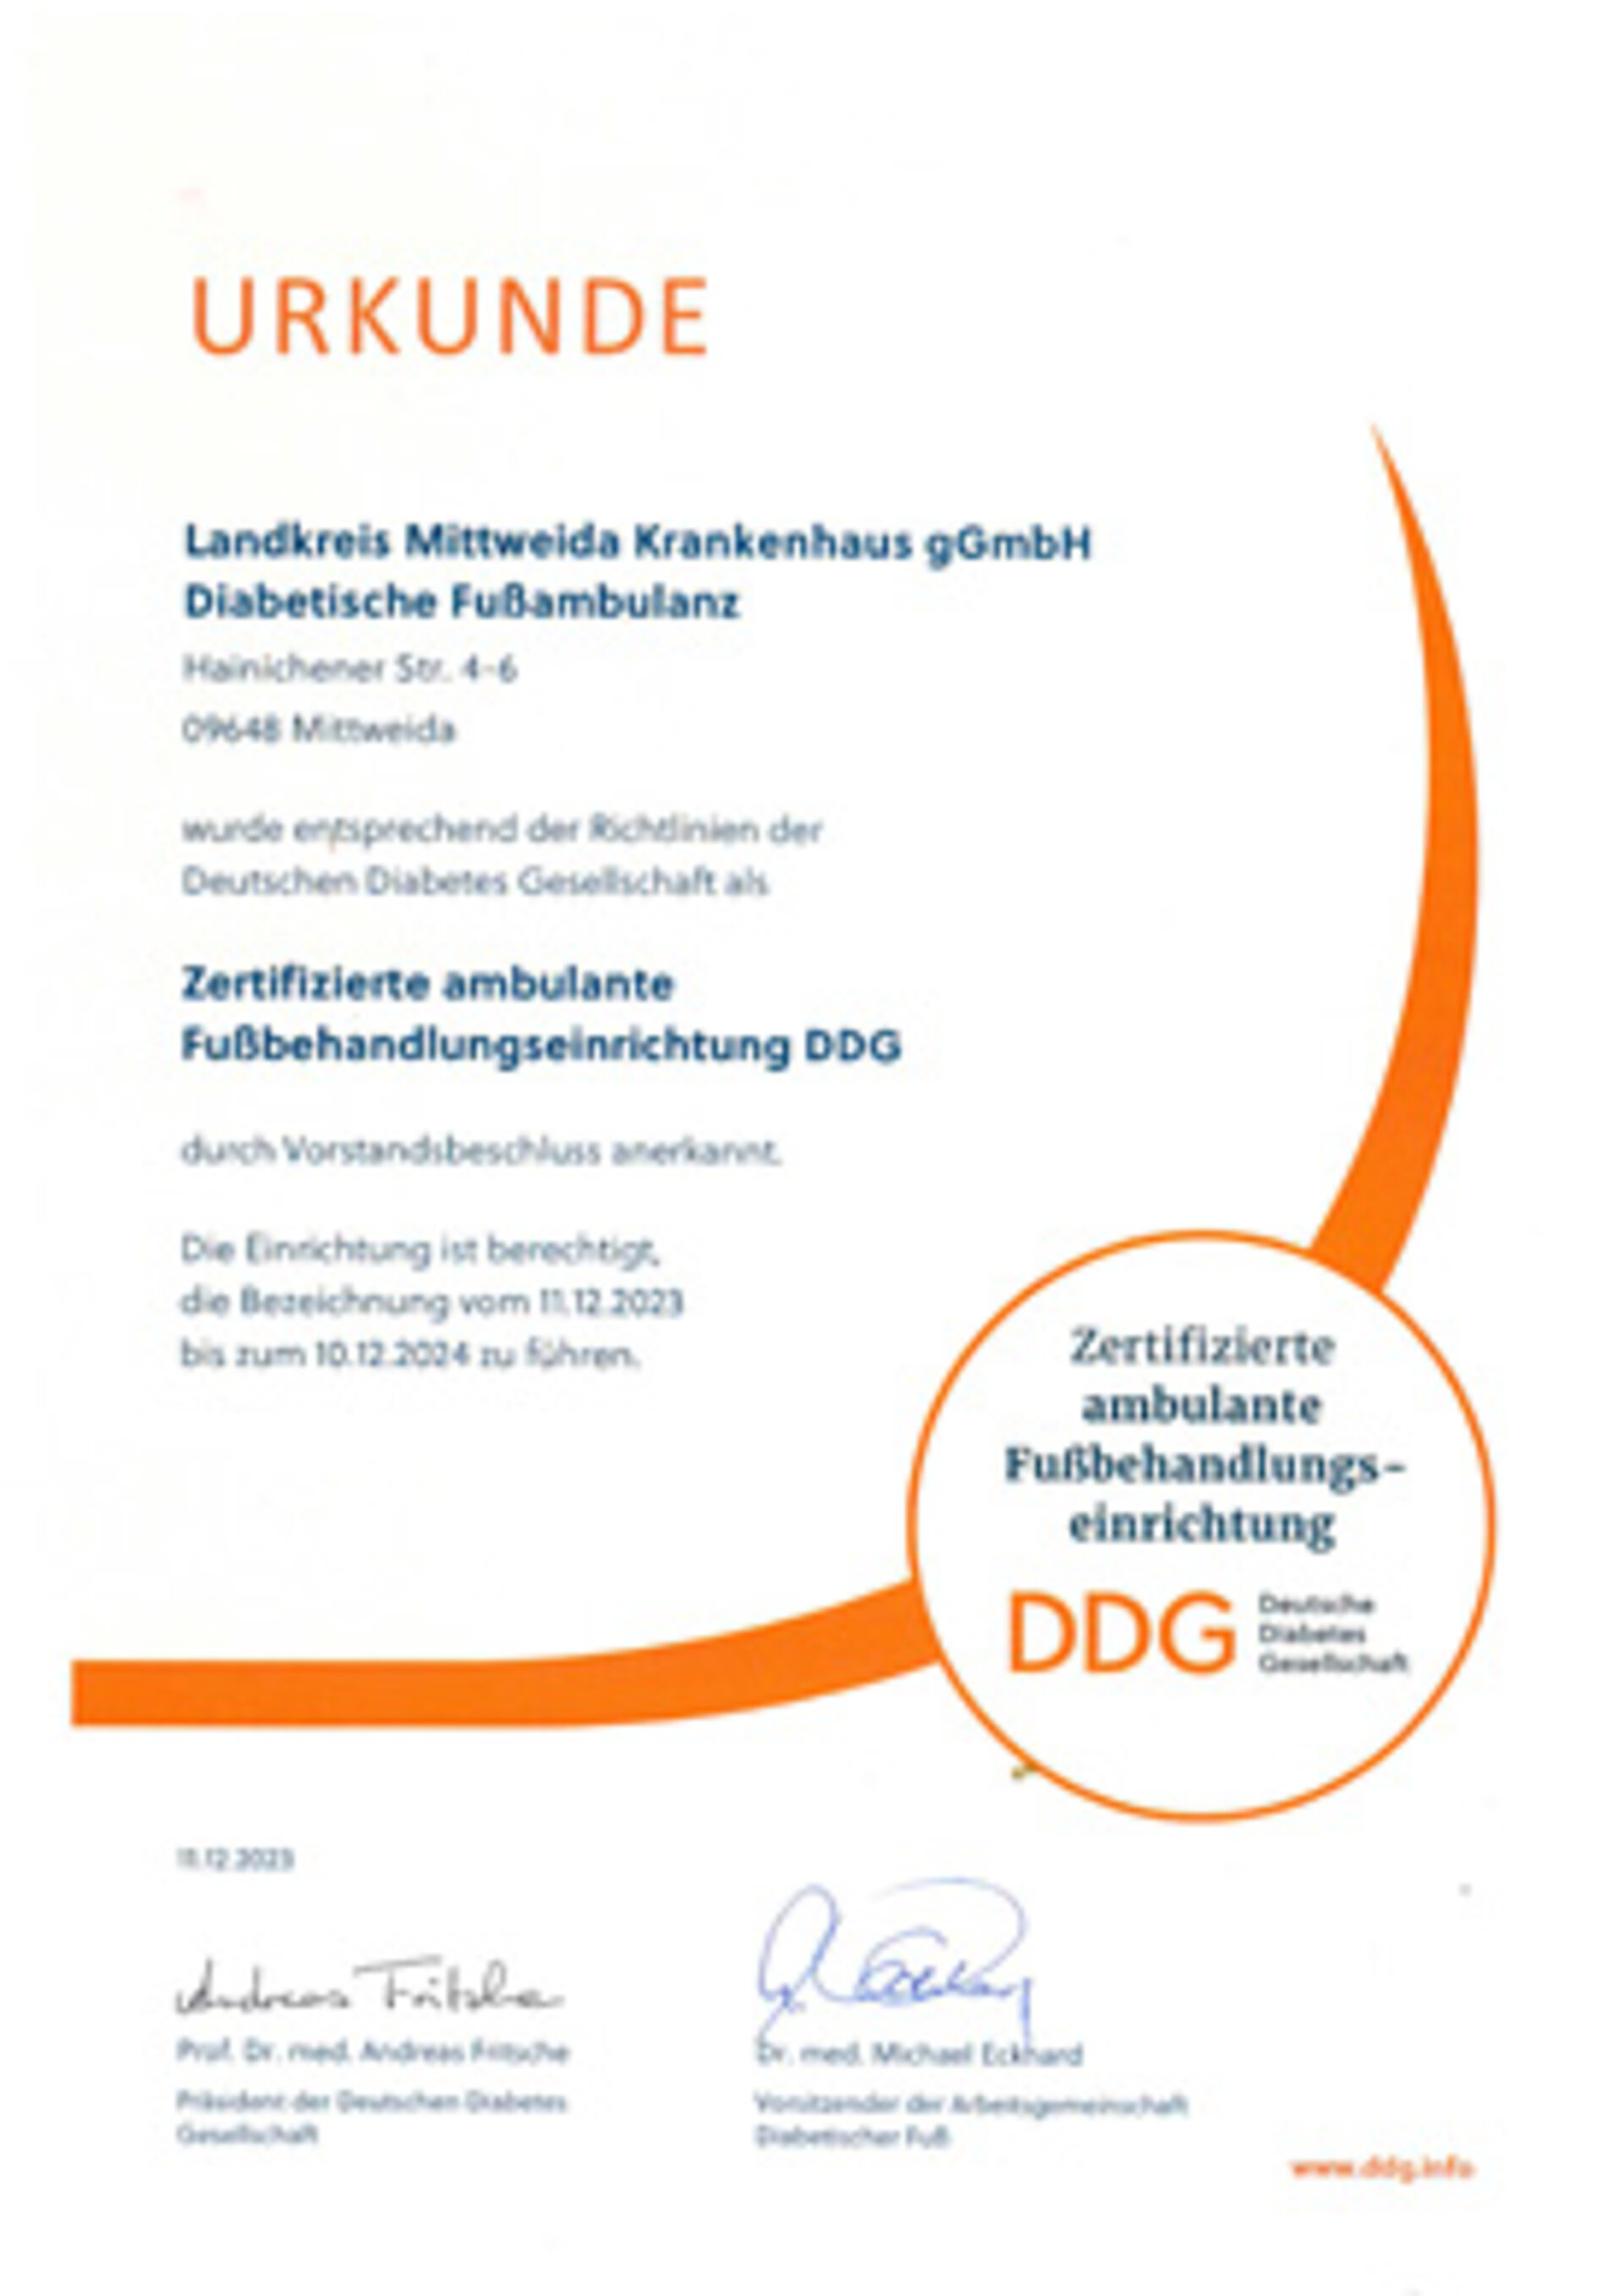 Zertifizierte ambulante Fußbehandlungseinrichtung DDG